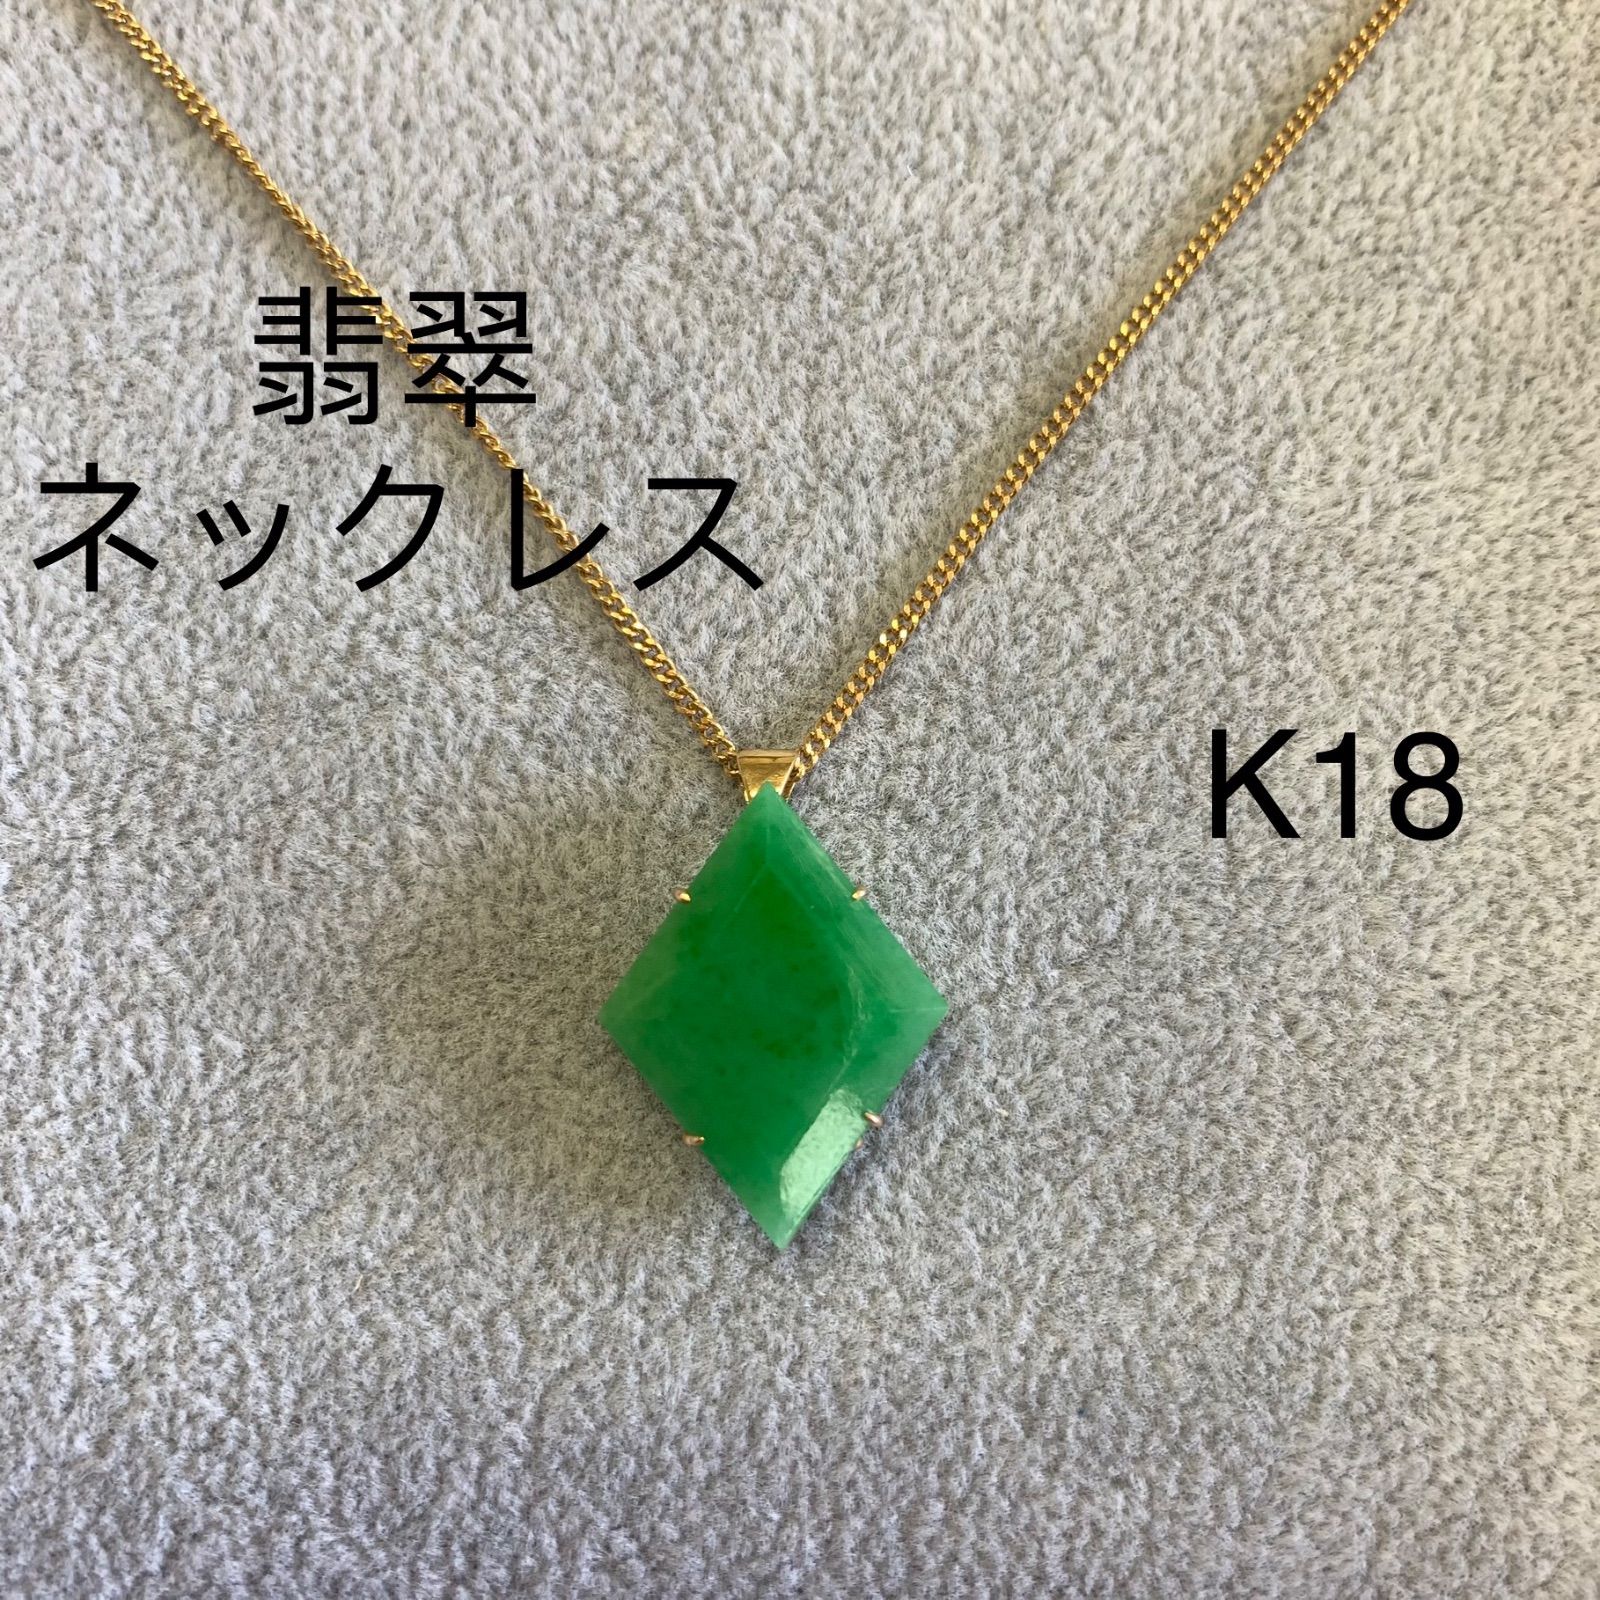 翡翠 ネックレス K18 - KTVTG - メルカリ